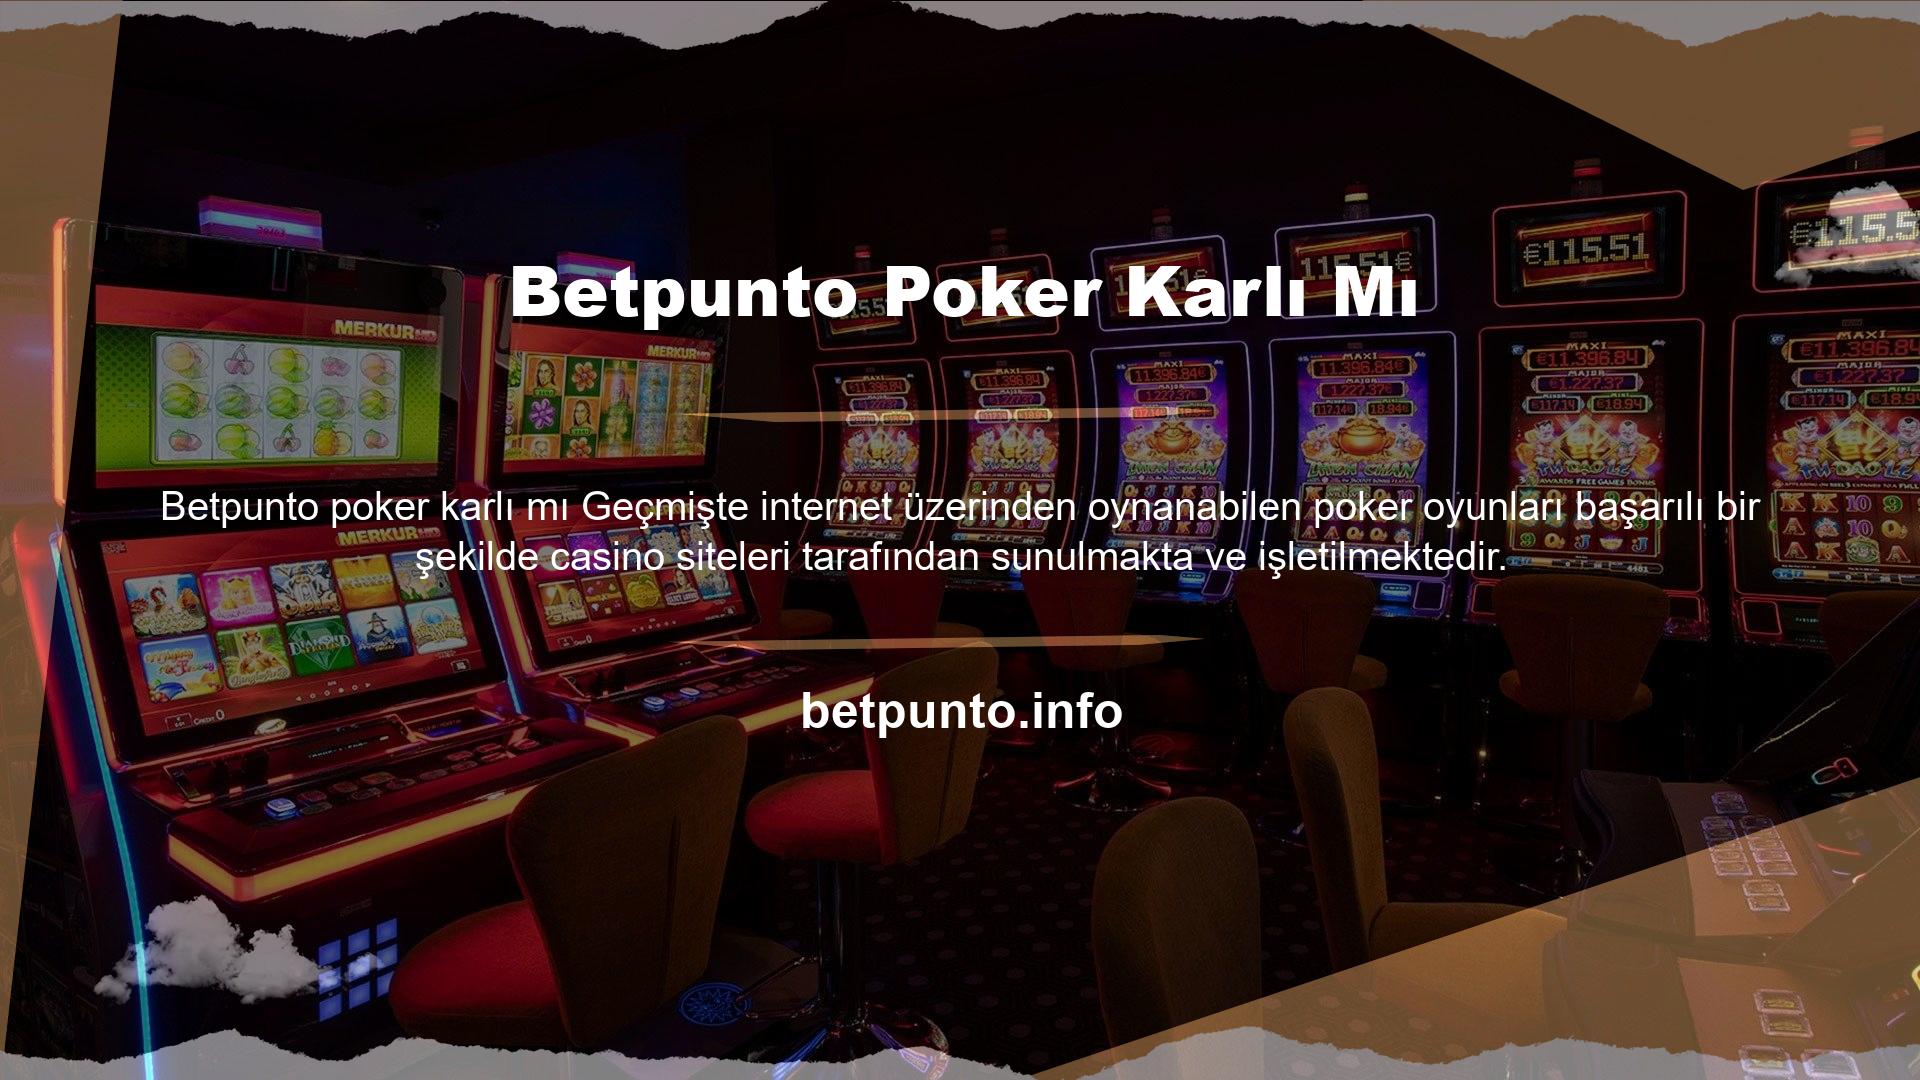 İlk kez duyanlar için Betpunto oynamayı öğrenmek isteyen ve pokerin ne olduğunu merak eden birçok kişi bulunmaktadır